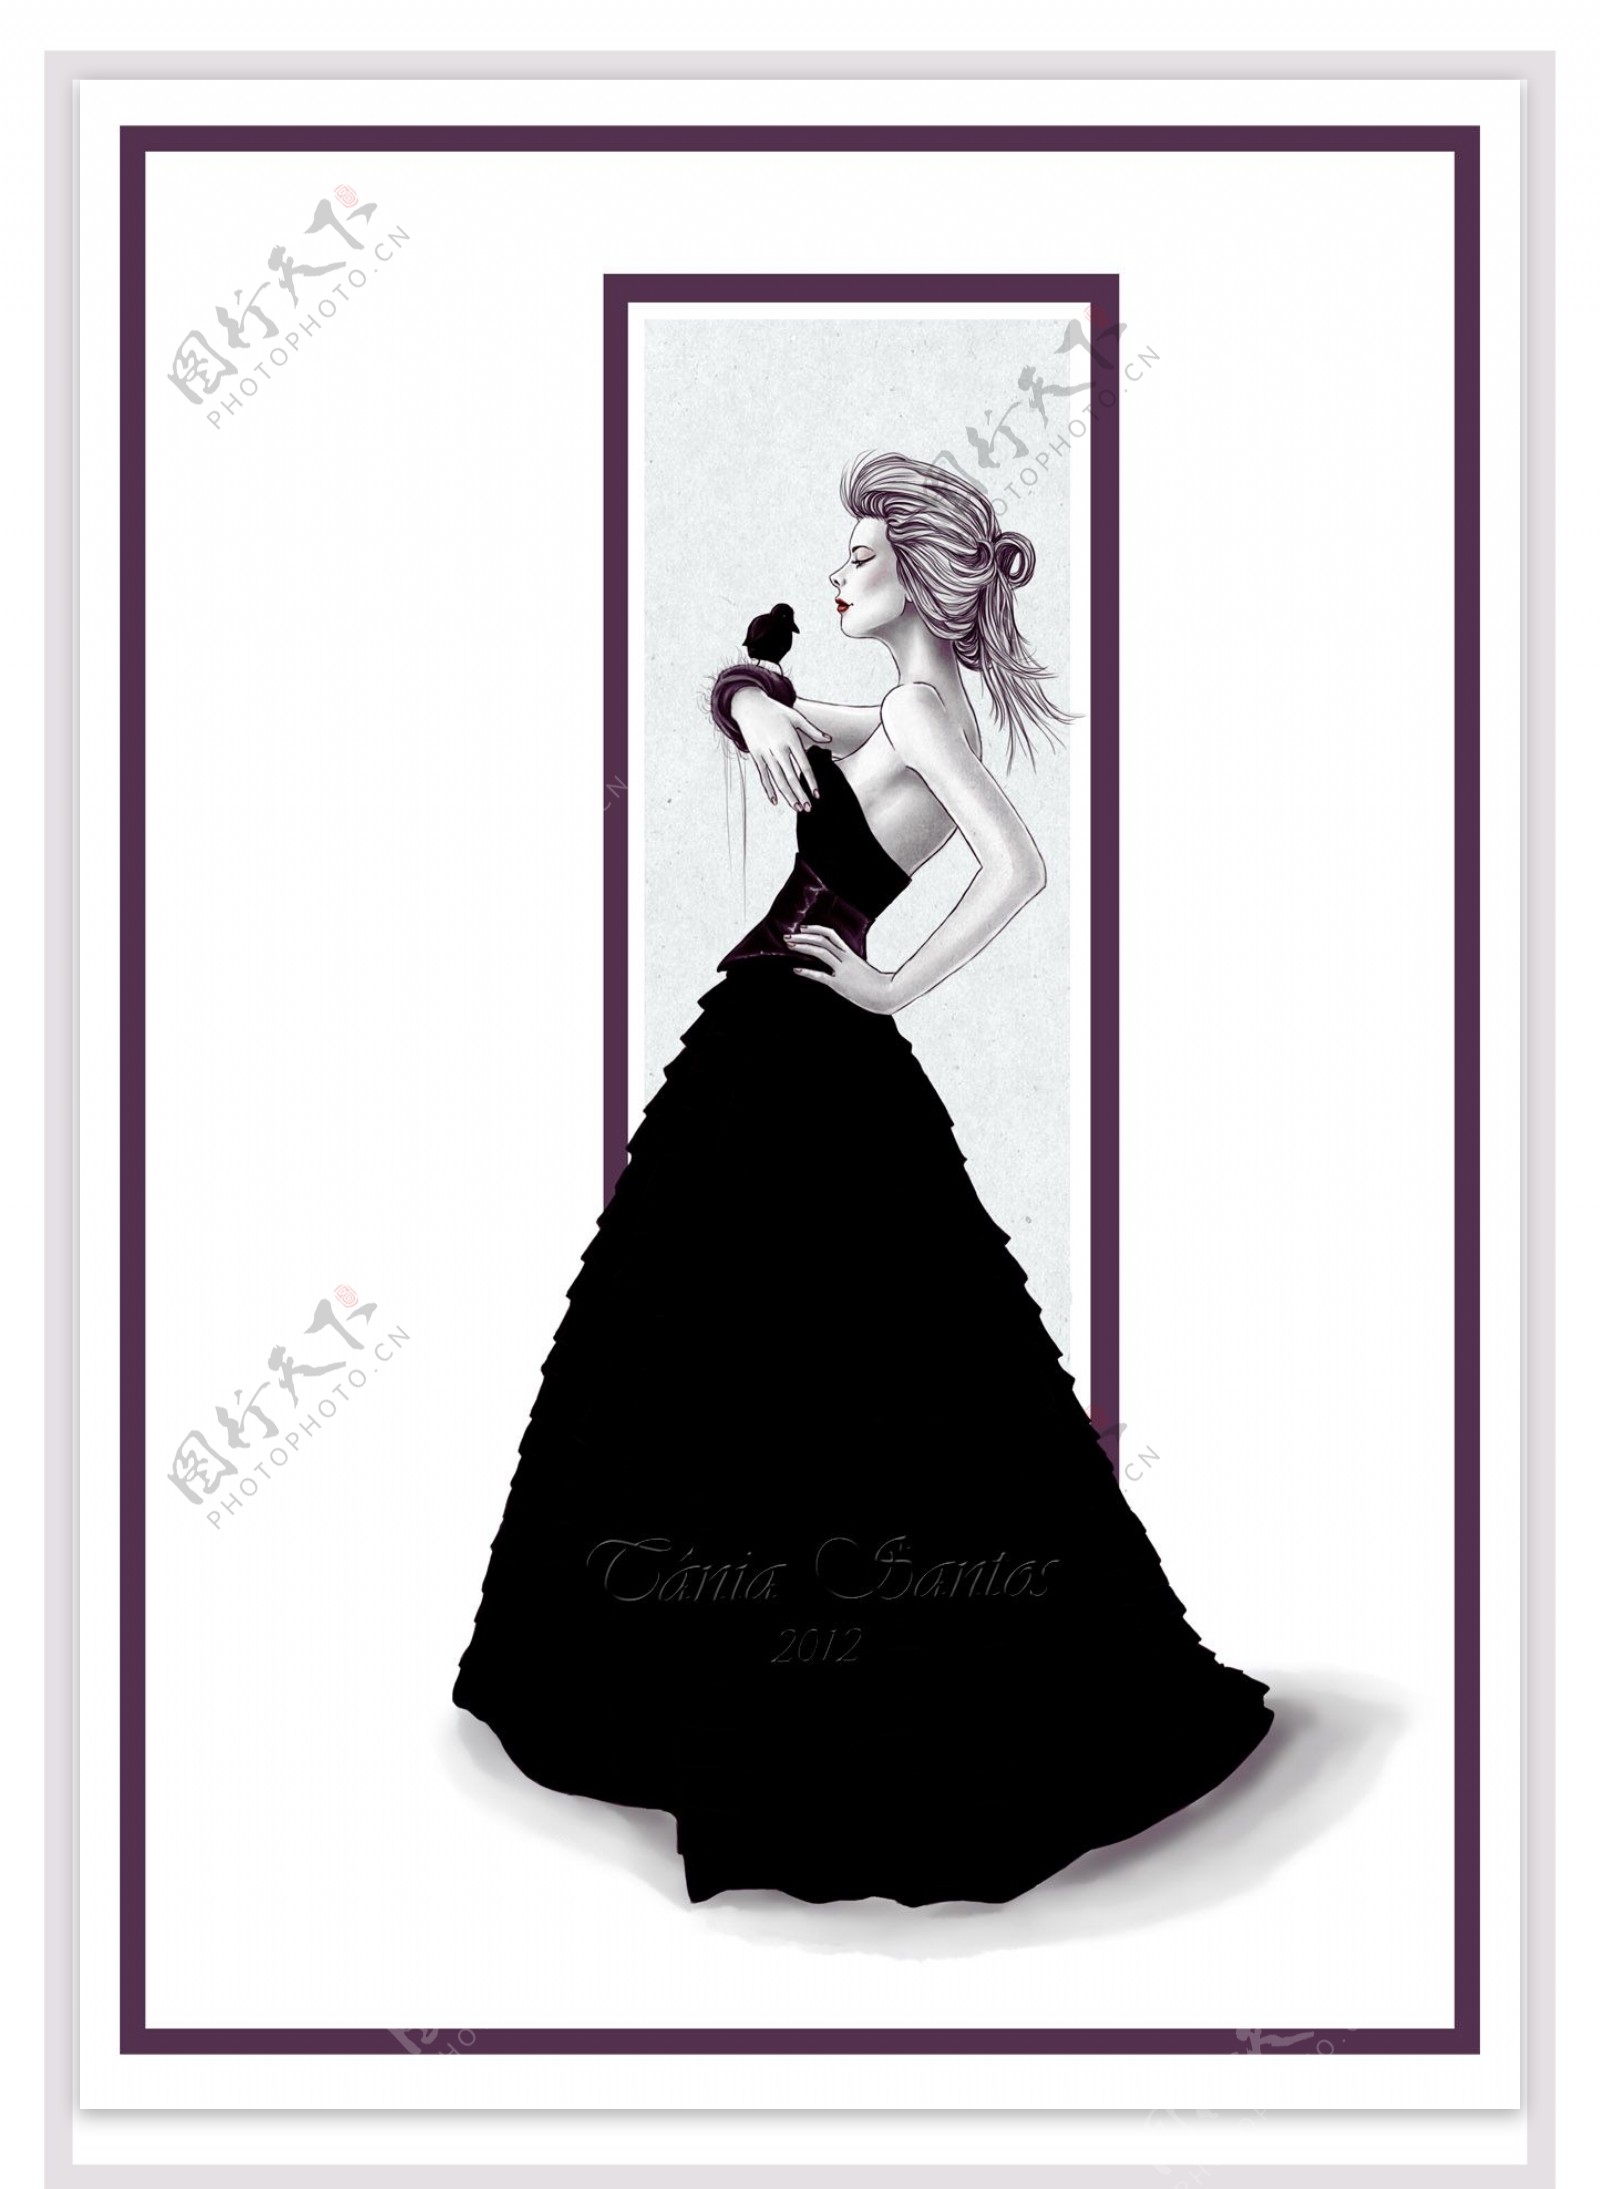 黑色抹胸长裙设计图